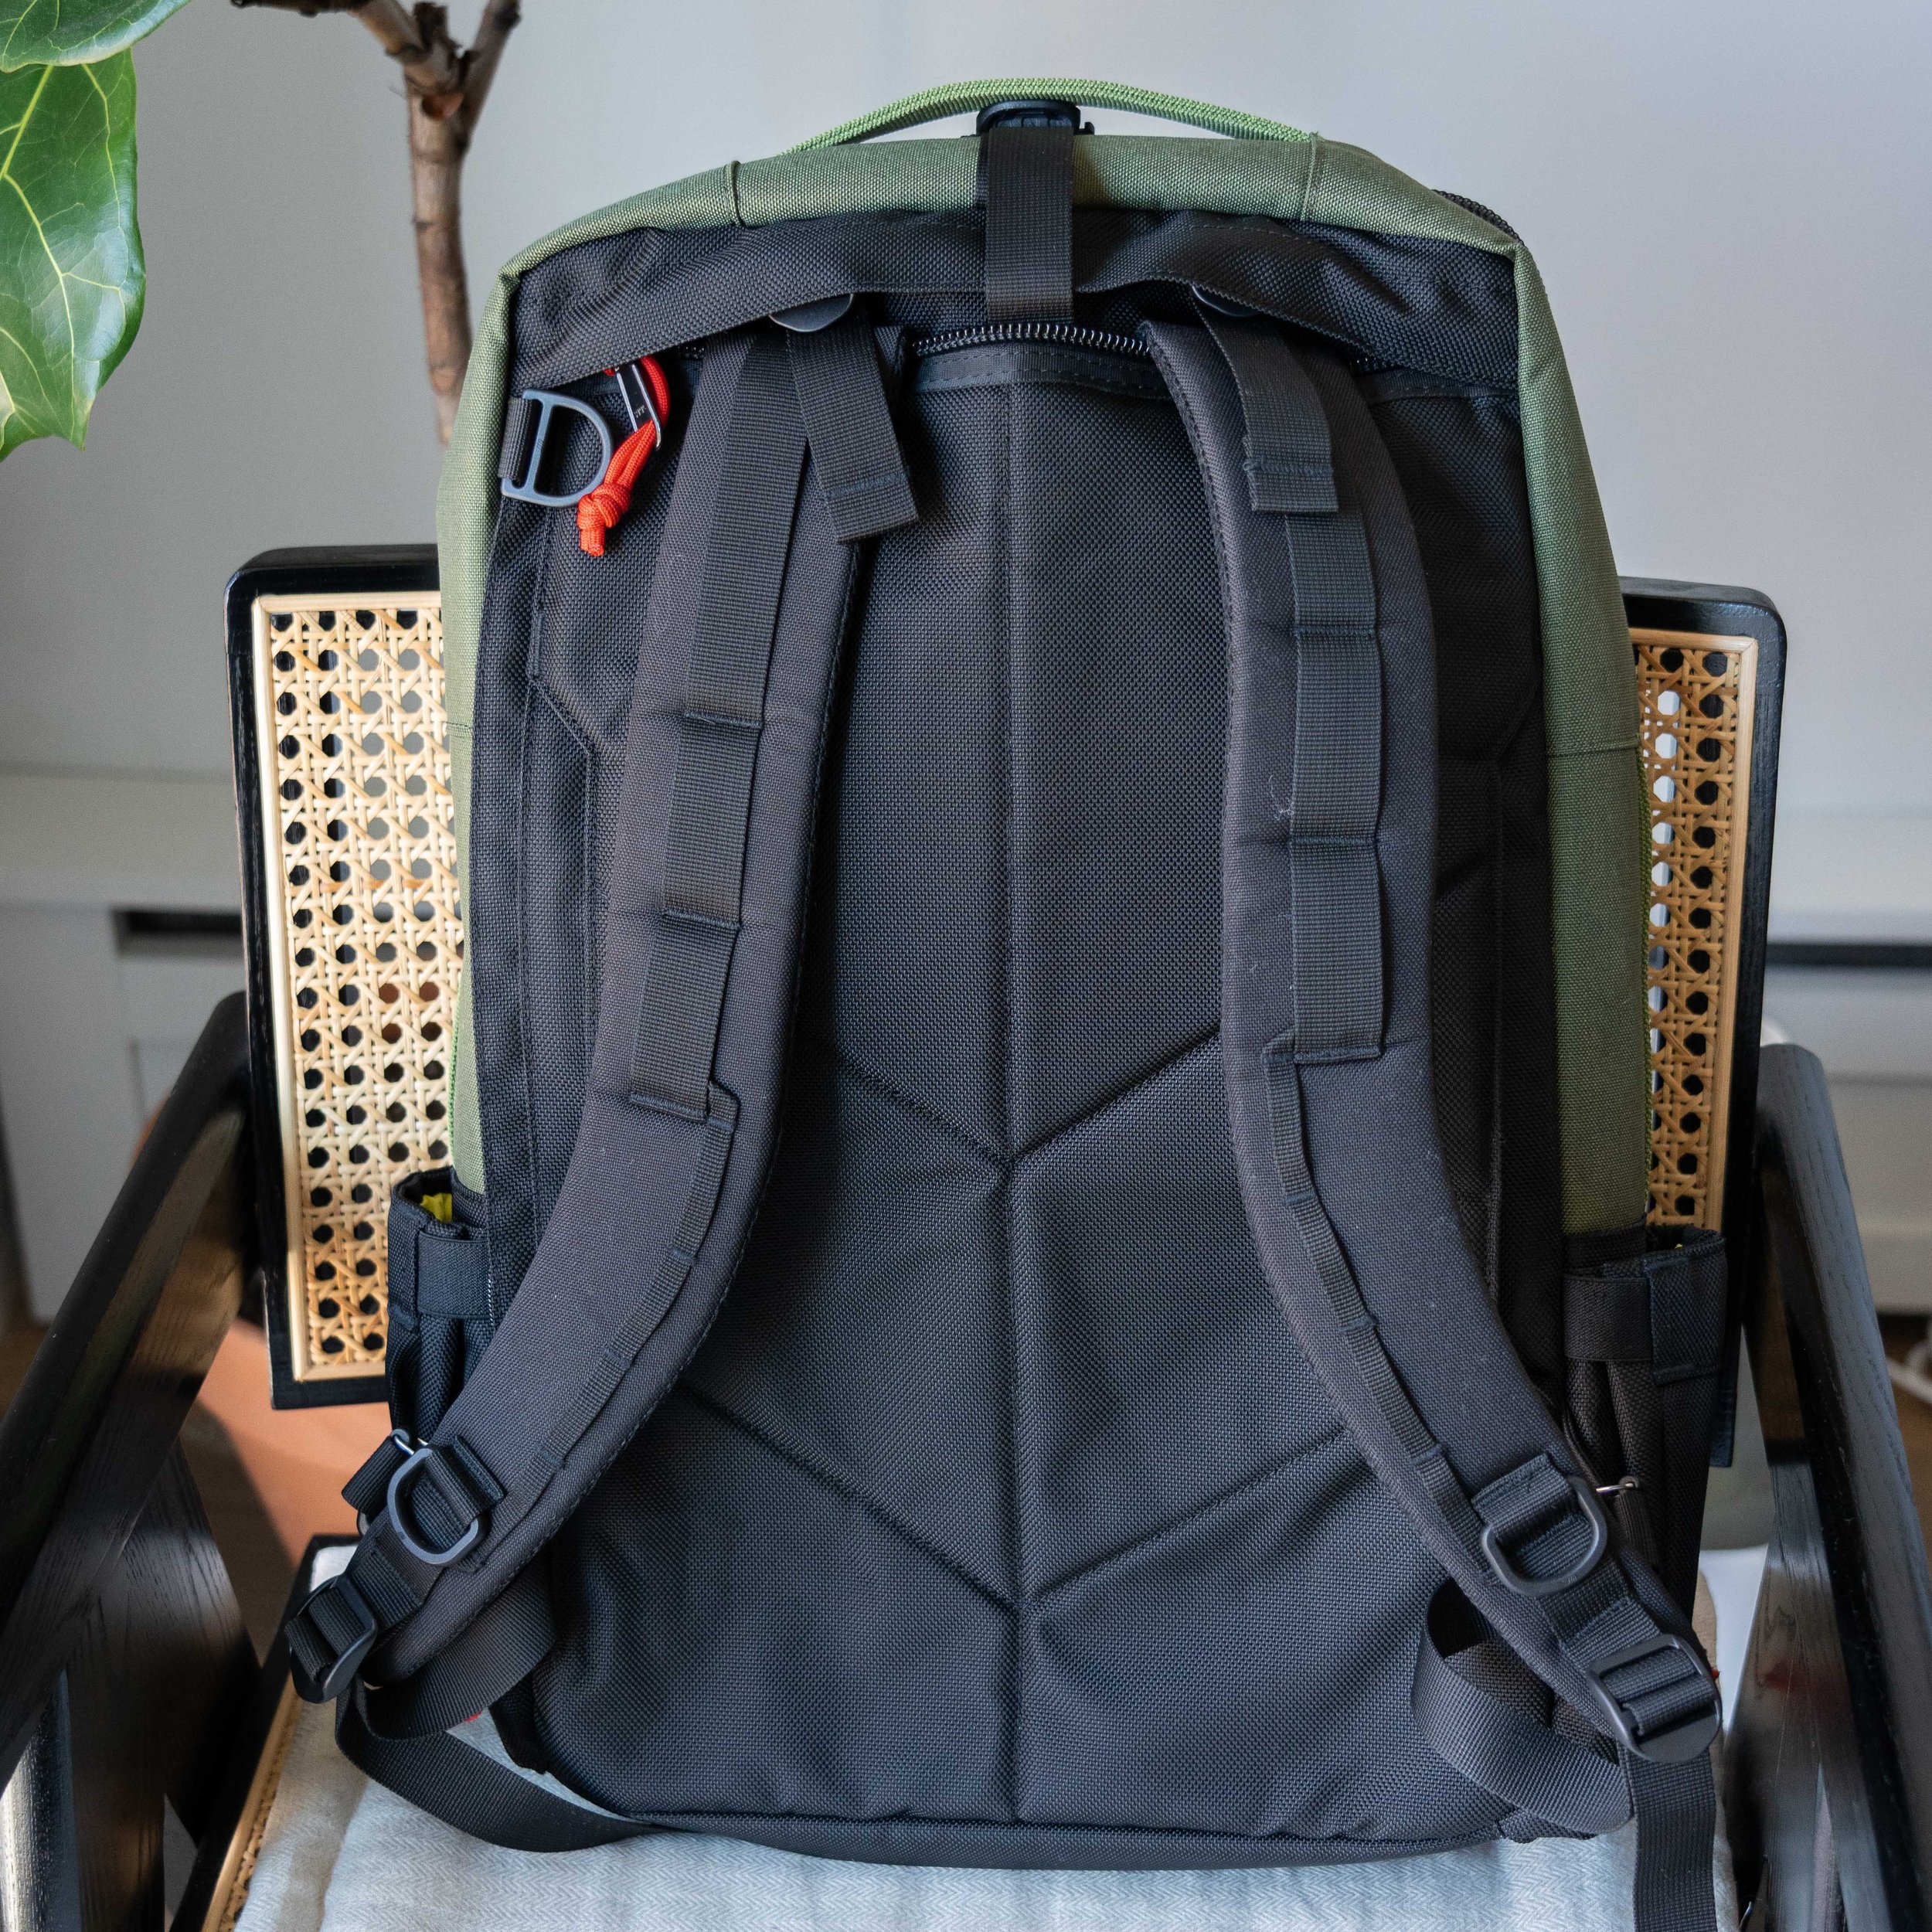 Topo Designs Global 30L Travel Bag 2024 - 30L in Blue | Nylon